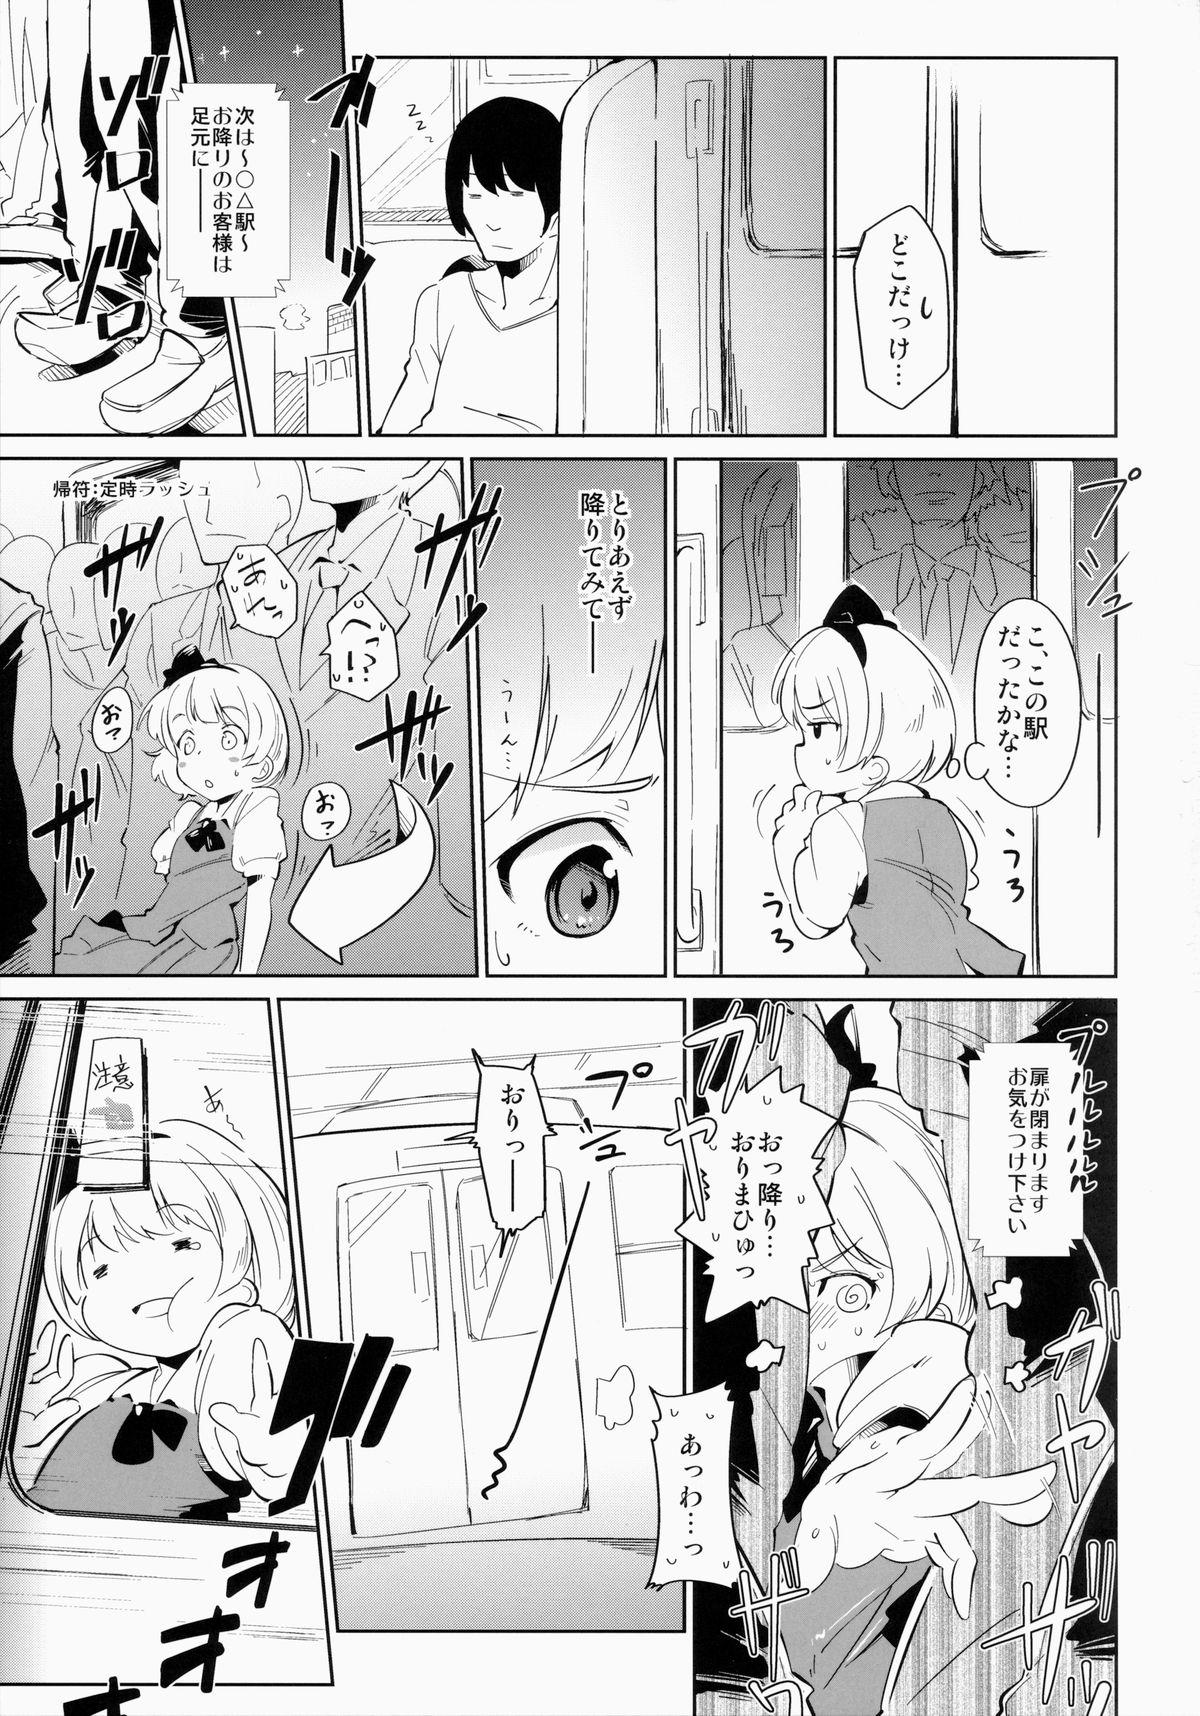 Blows SUKIMA EXPRESS - Touhou project Slave - Page 4